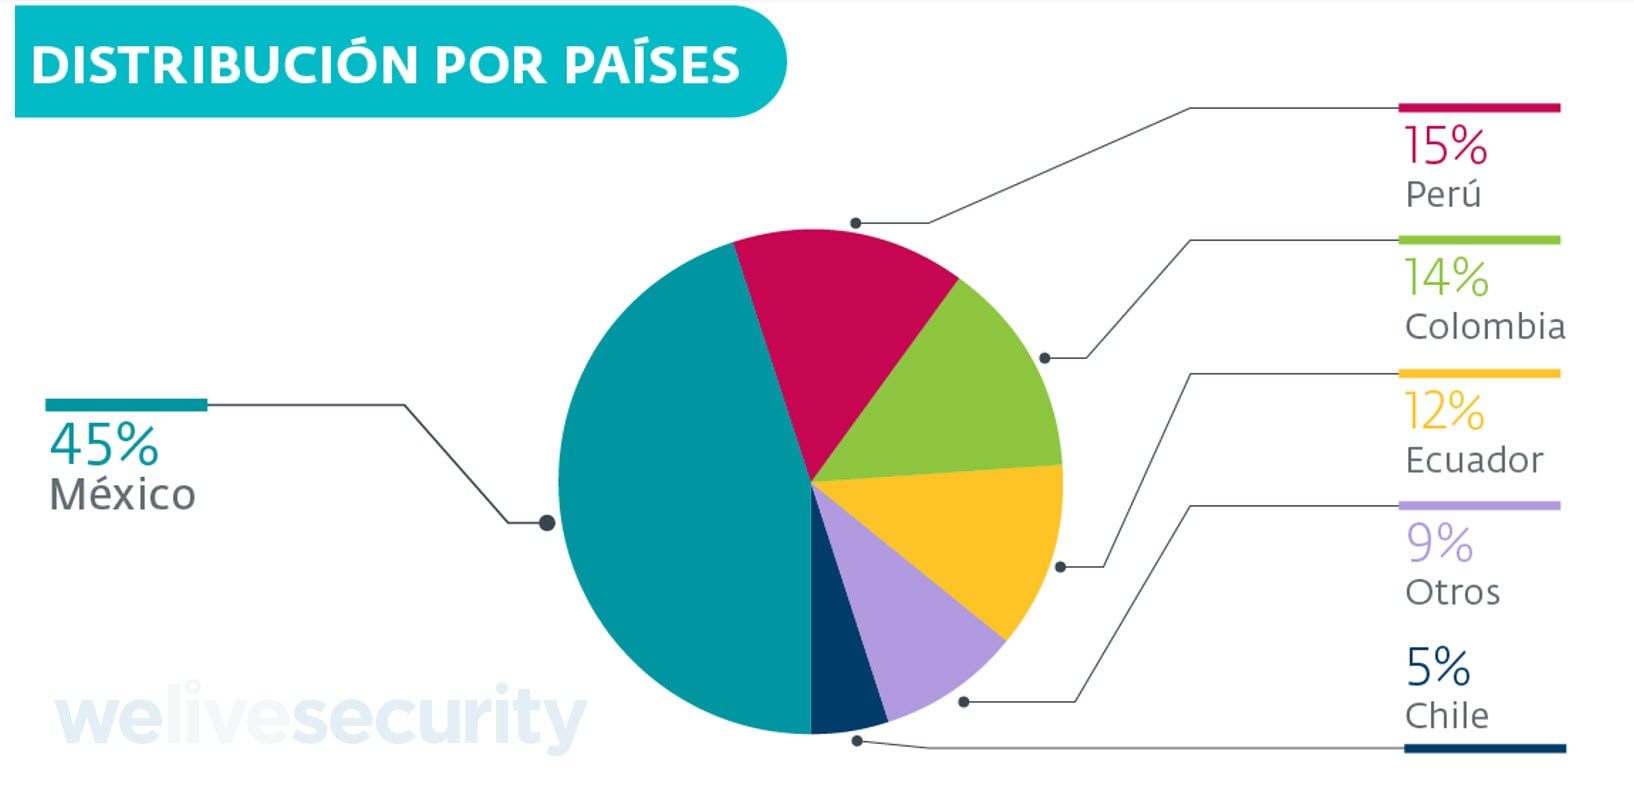 ESET identificó una campaña que intenta distribuir malware en América Latina